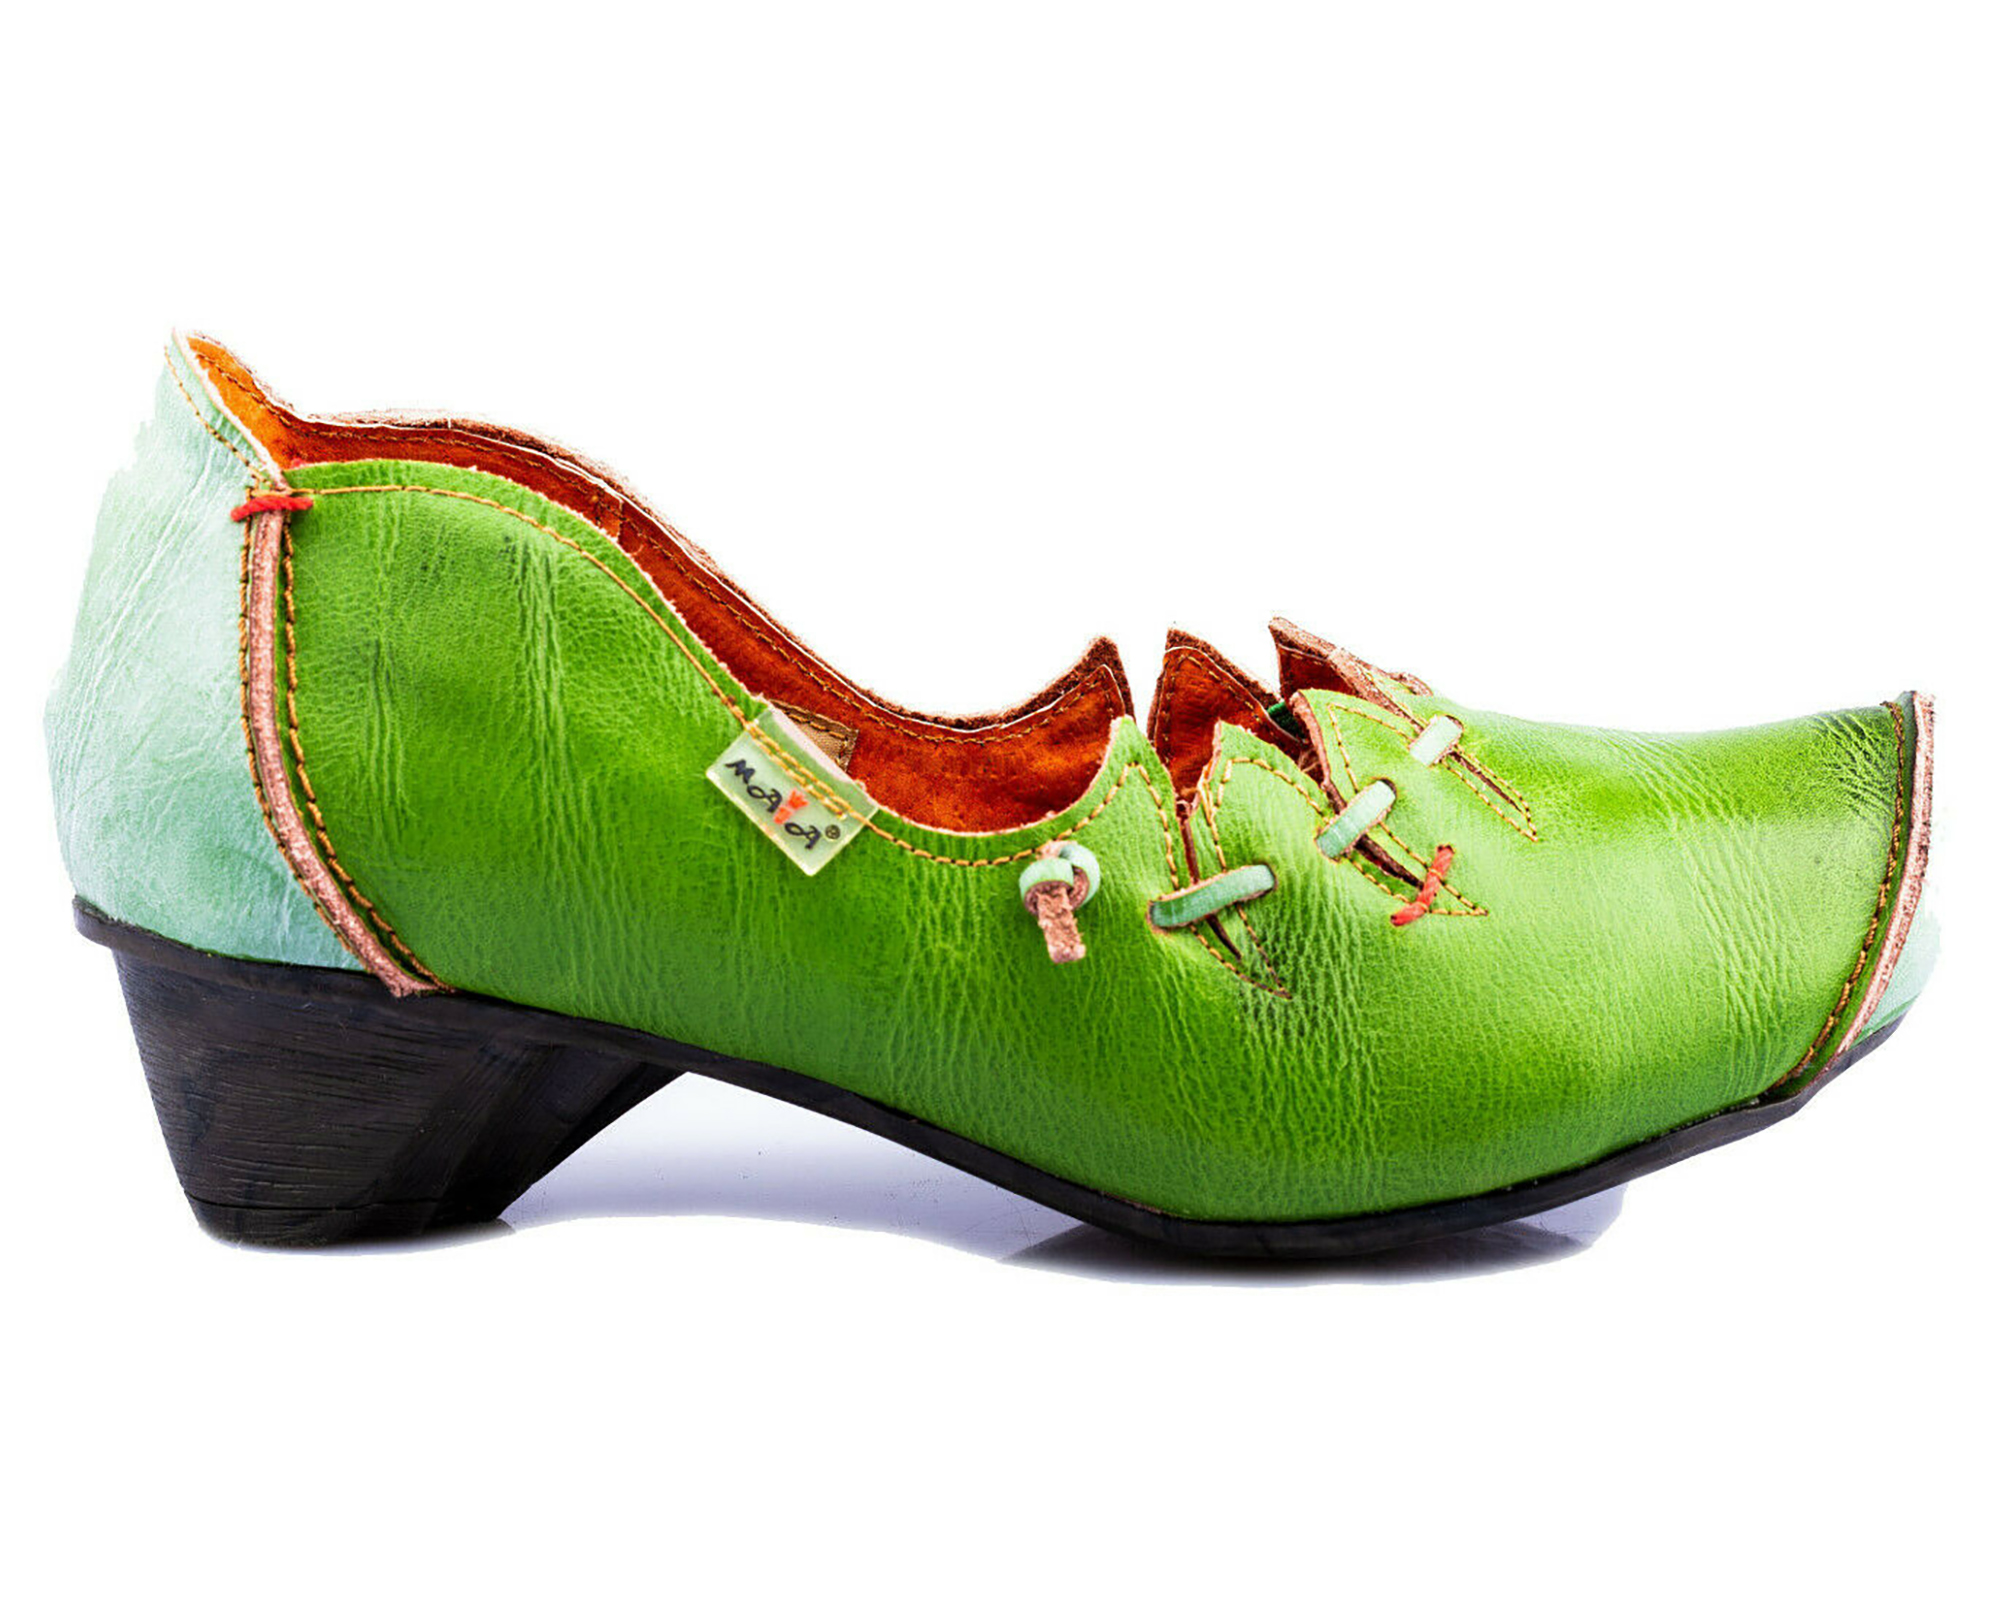 Pumps | TMA 8787 | Damen Halbschuhe mit Absatz | Echtleder Schuhe | grün | Größen 36 - 42